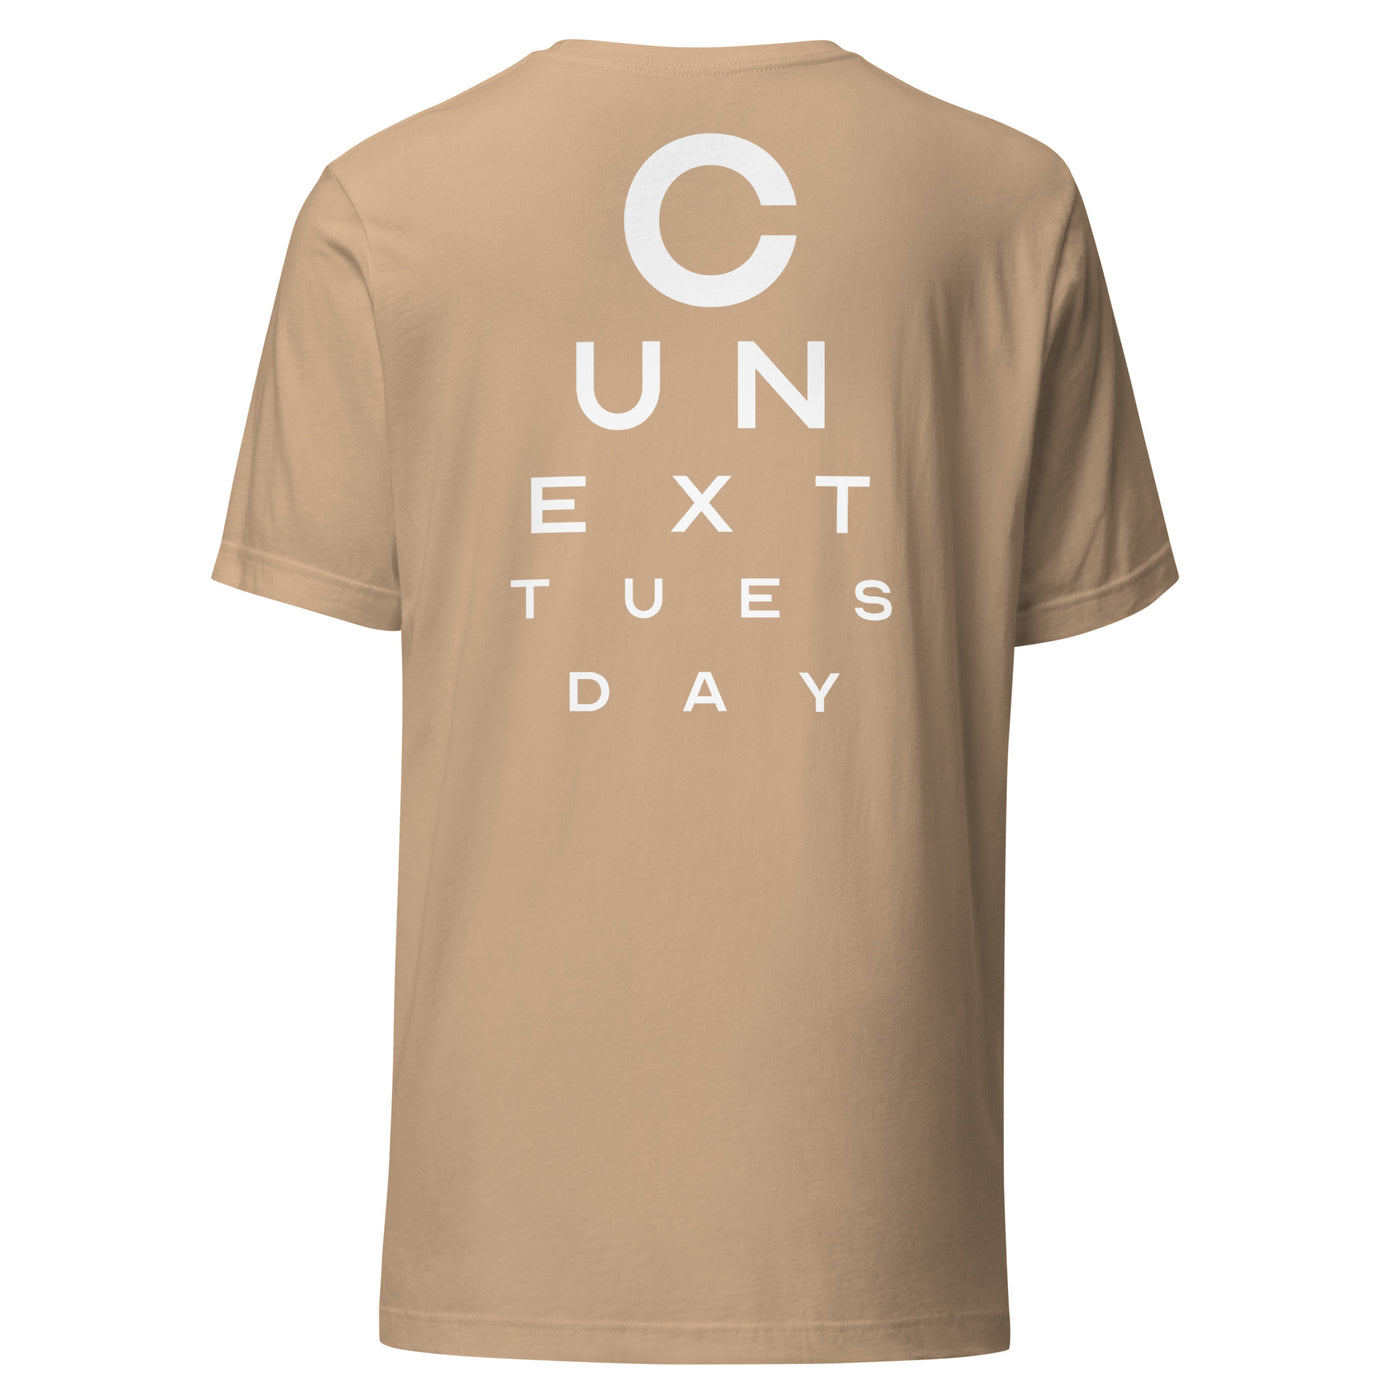 C U NEXT TUESDAY T-Shirt England Edition